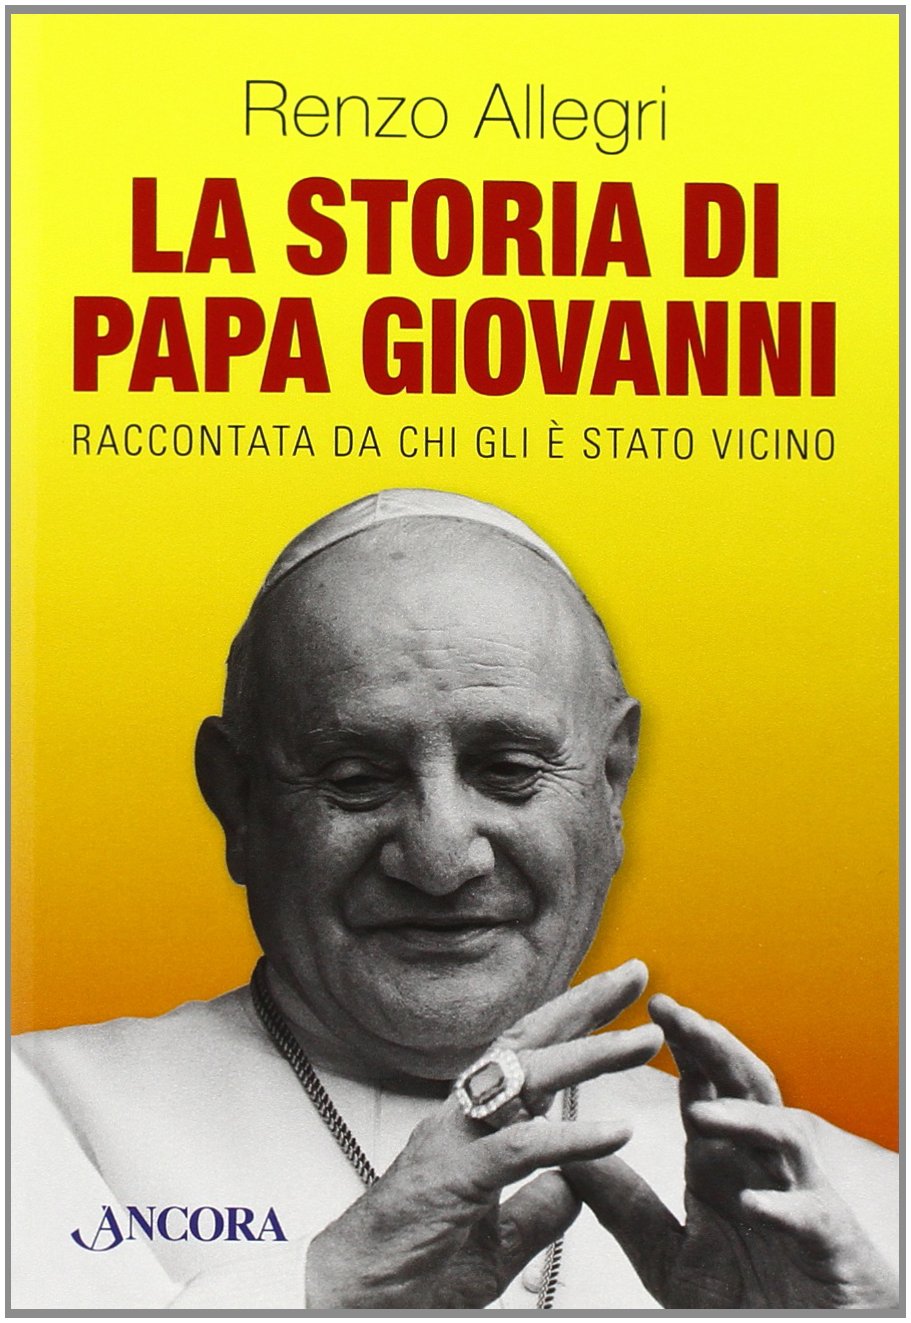 Libri Renzo Allegri - La Storia Di Papa Giovanni NUOVO SIGILLATO, EDIZIONE DEL 02/04/2014 SUBITO DISPONIBILE